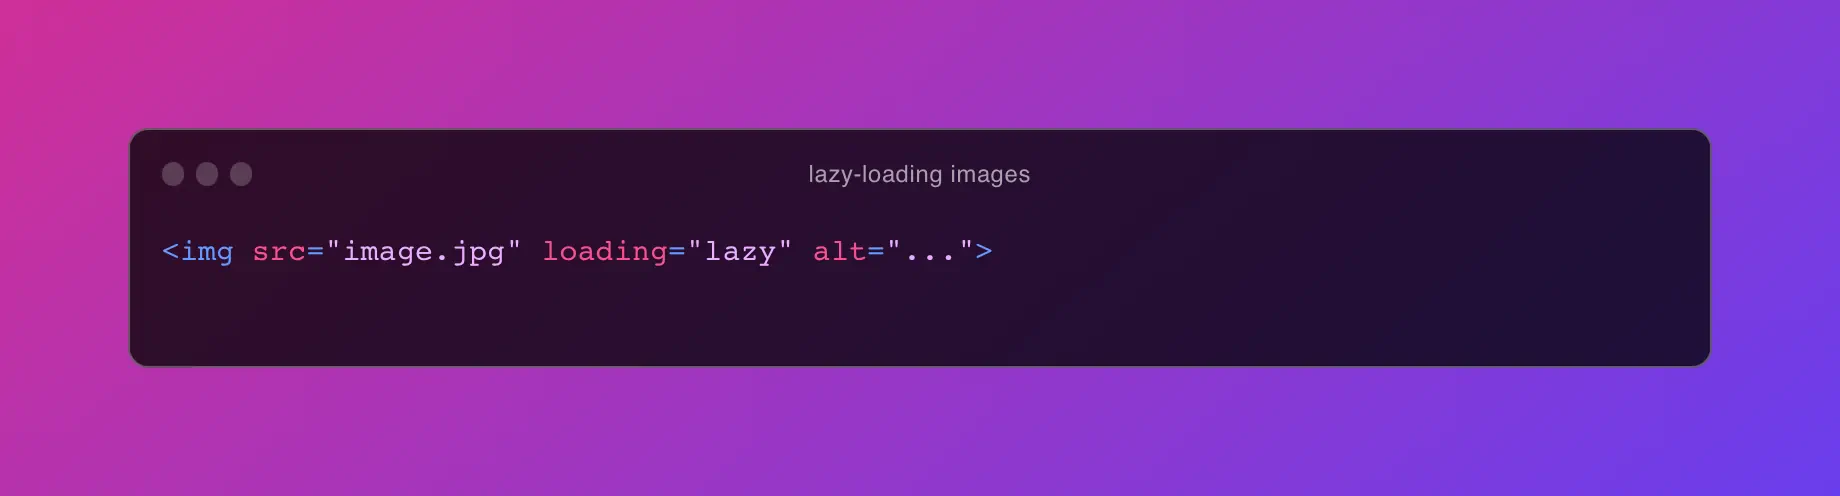 optimizing images by lazy loading